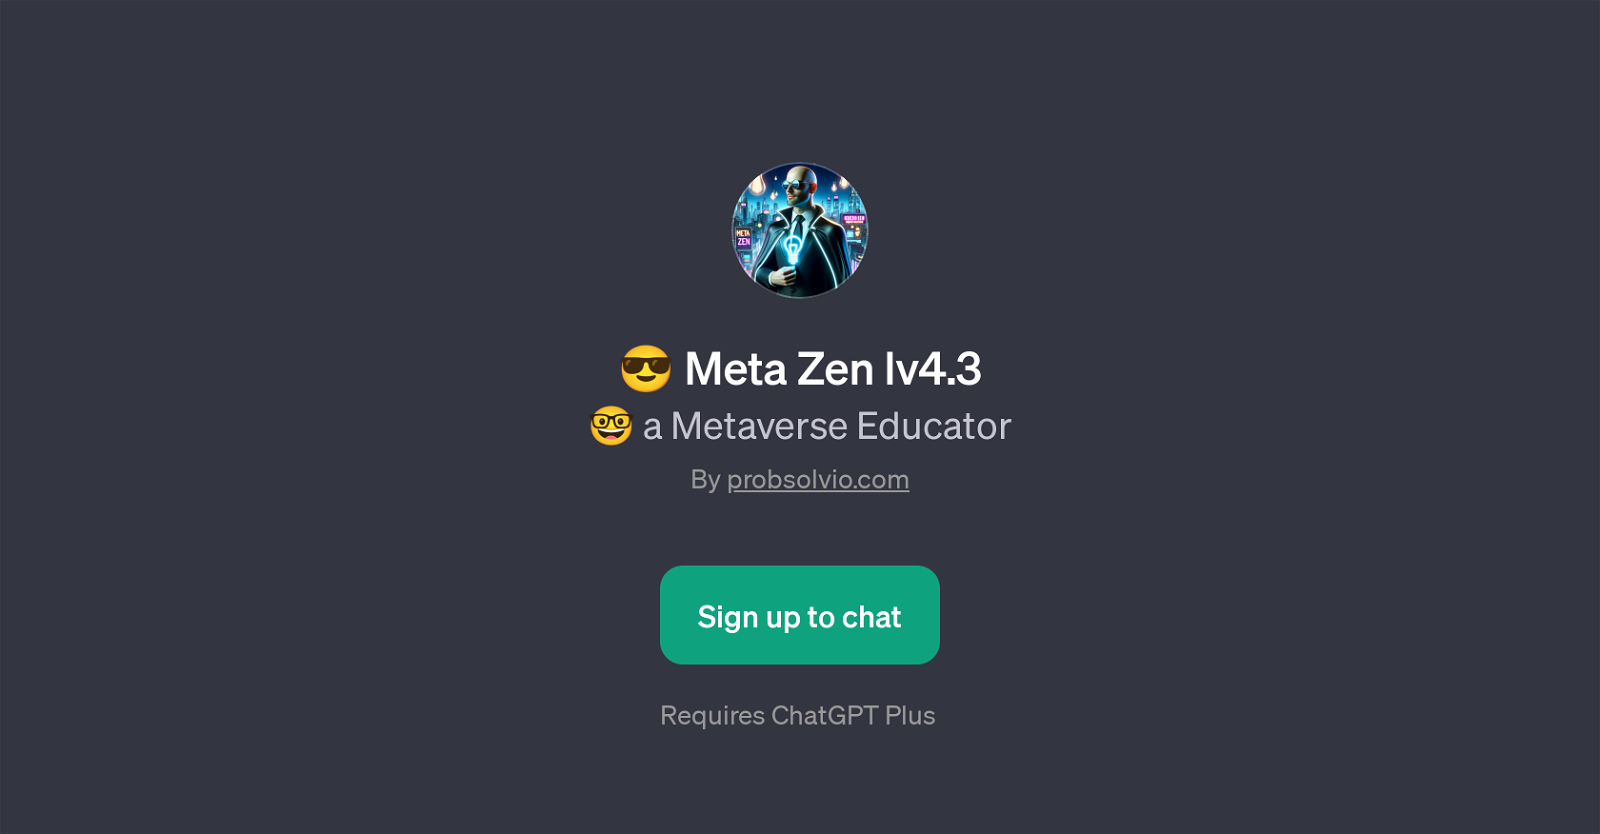 Meta Zen lv4.3 website